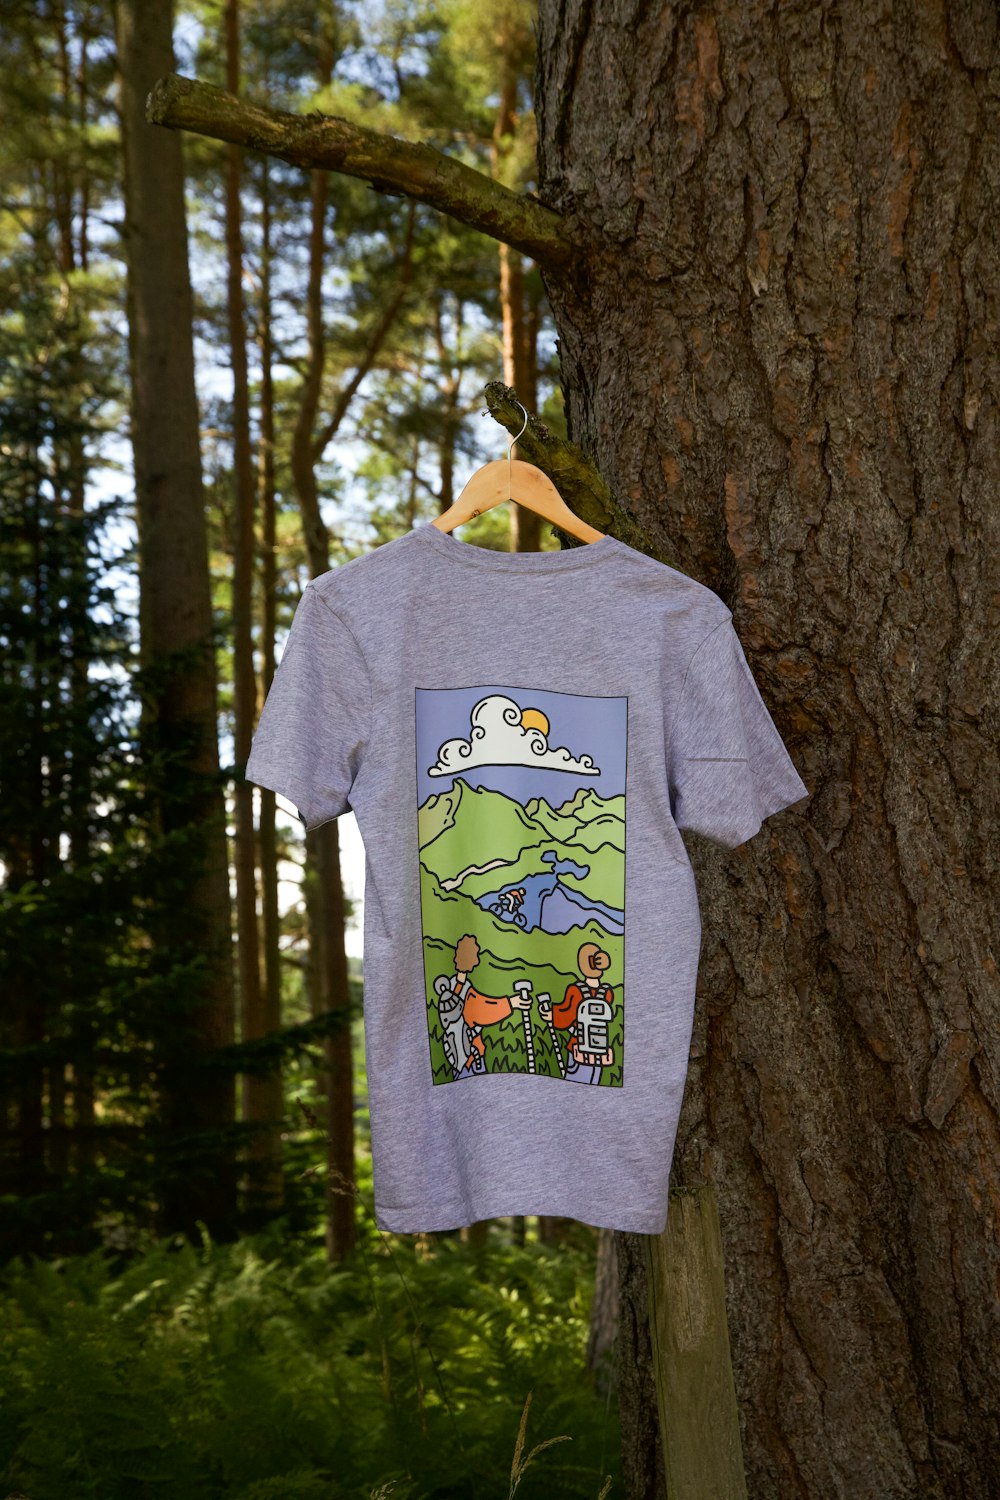 Ein T-Shirt hängt an einem Baum im Wald